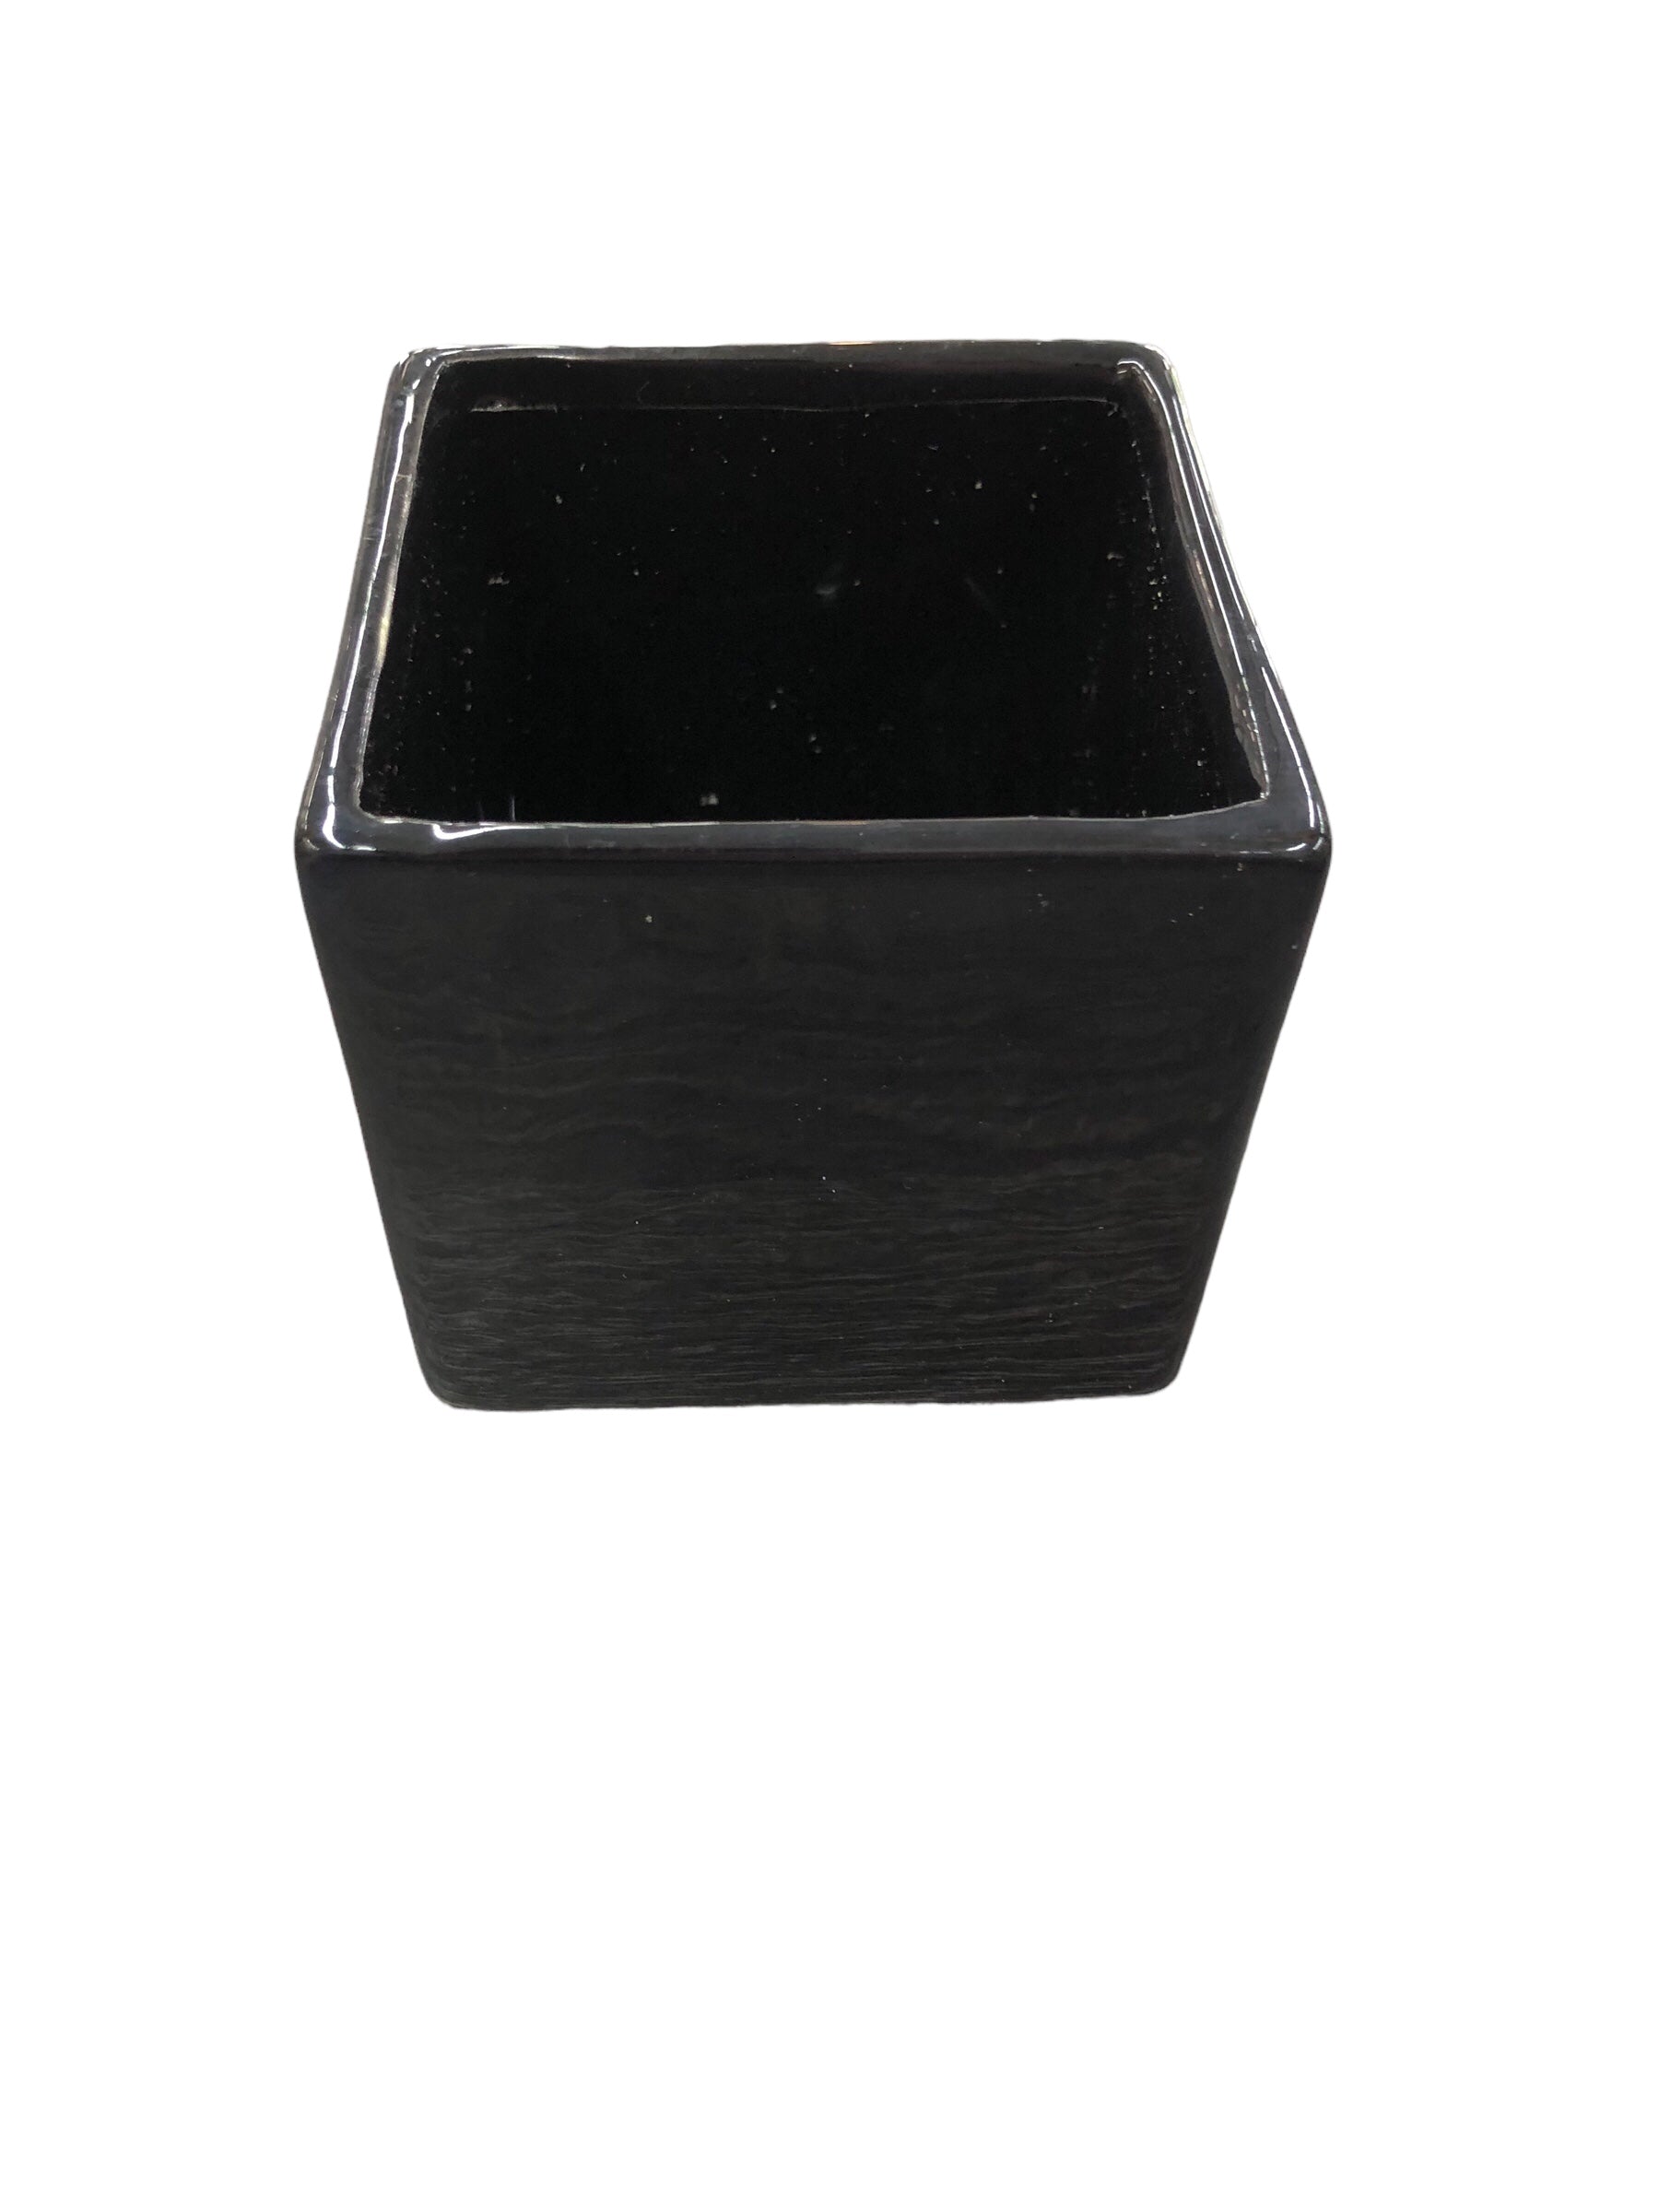 Square black vase